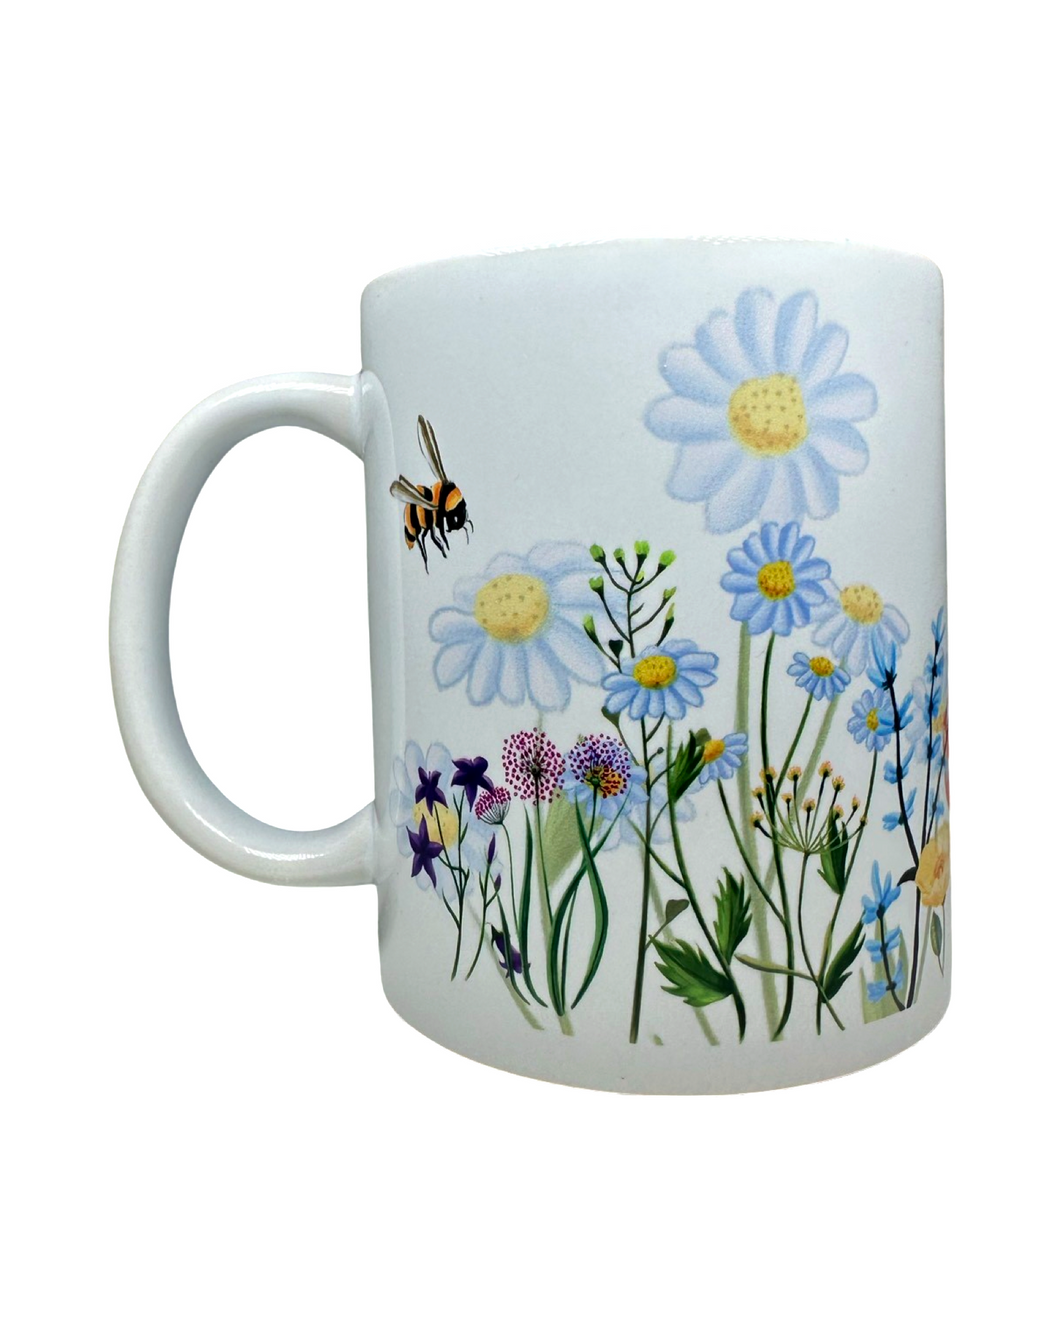 Flowers + Bees 12 oz Ceramic Mug